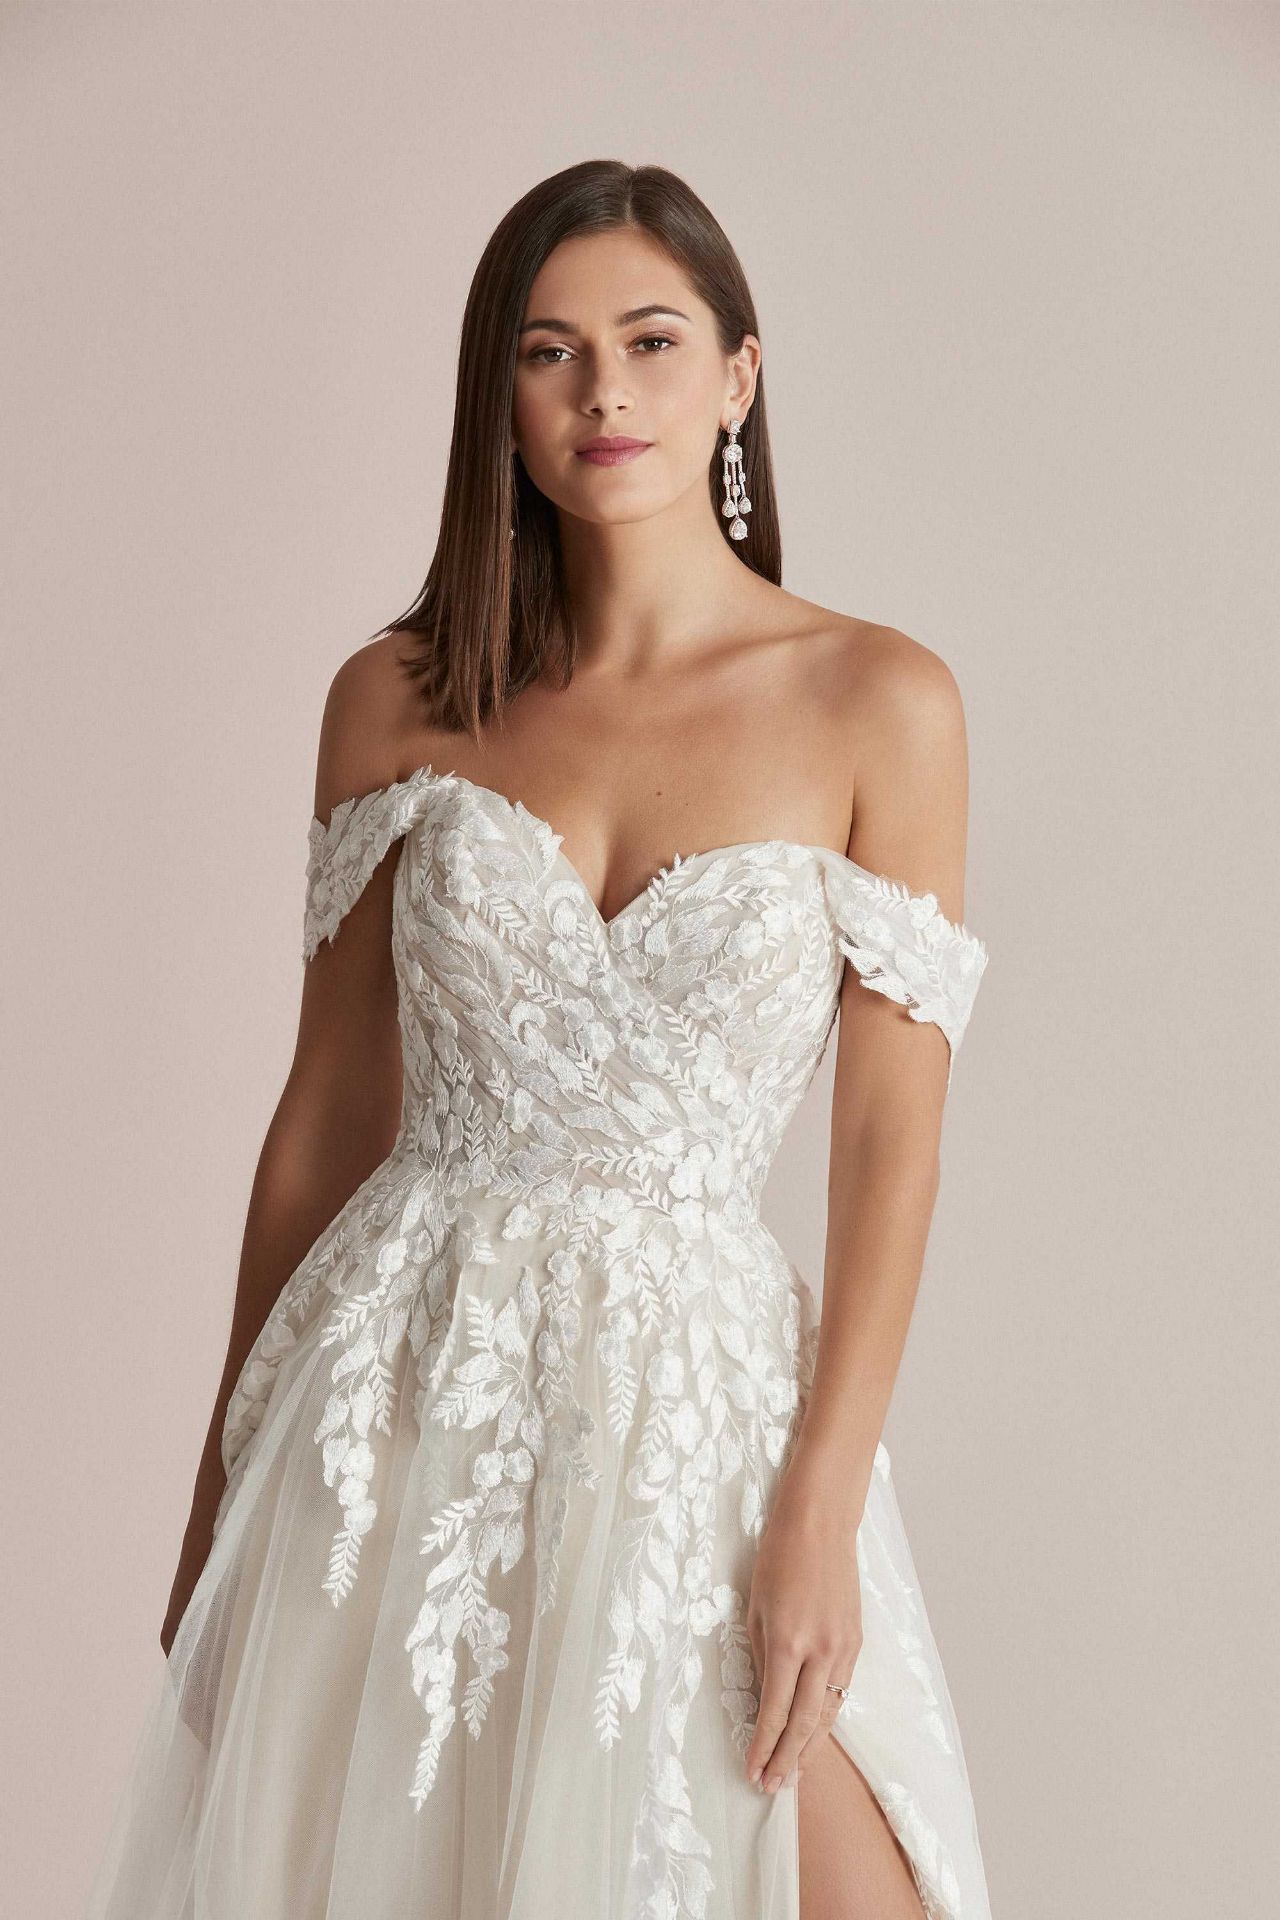 1 x Justin Alexander 'Carlee' Designer A-Line Wedding Dress - UK Size 18 - RRP £1,500 - Image 4 of 4